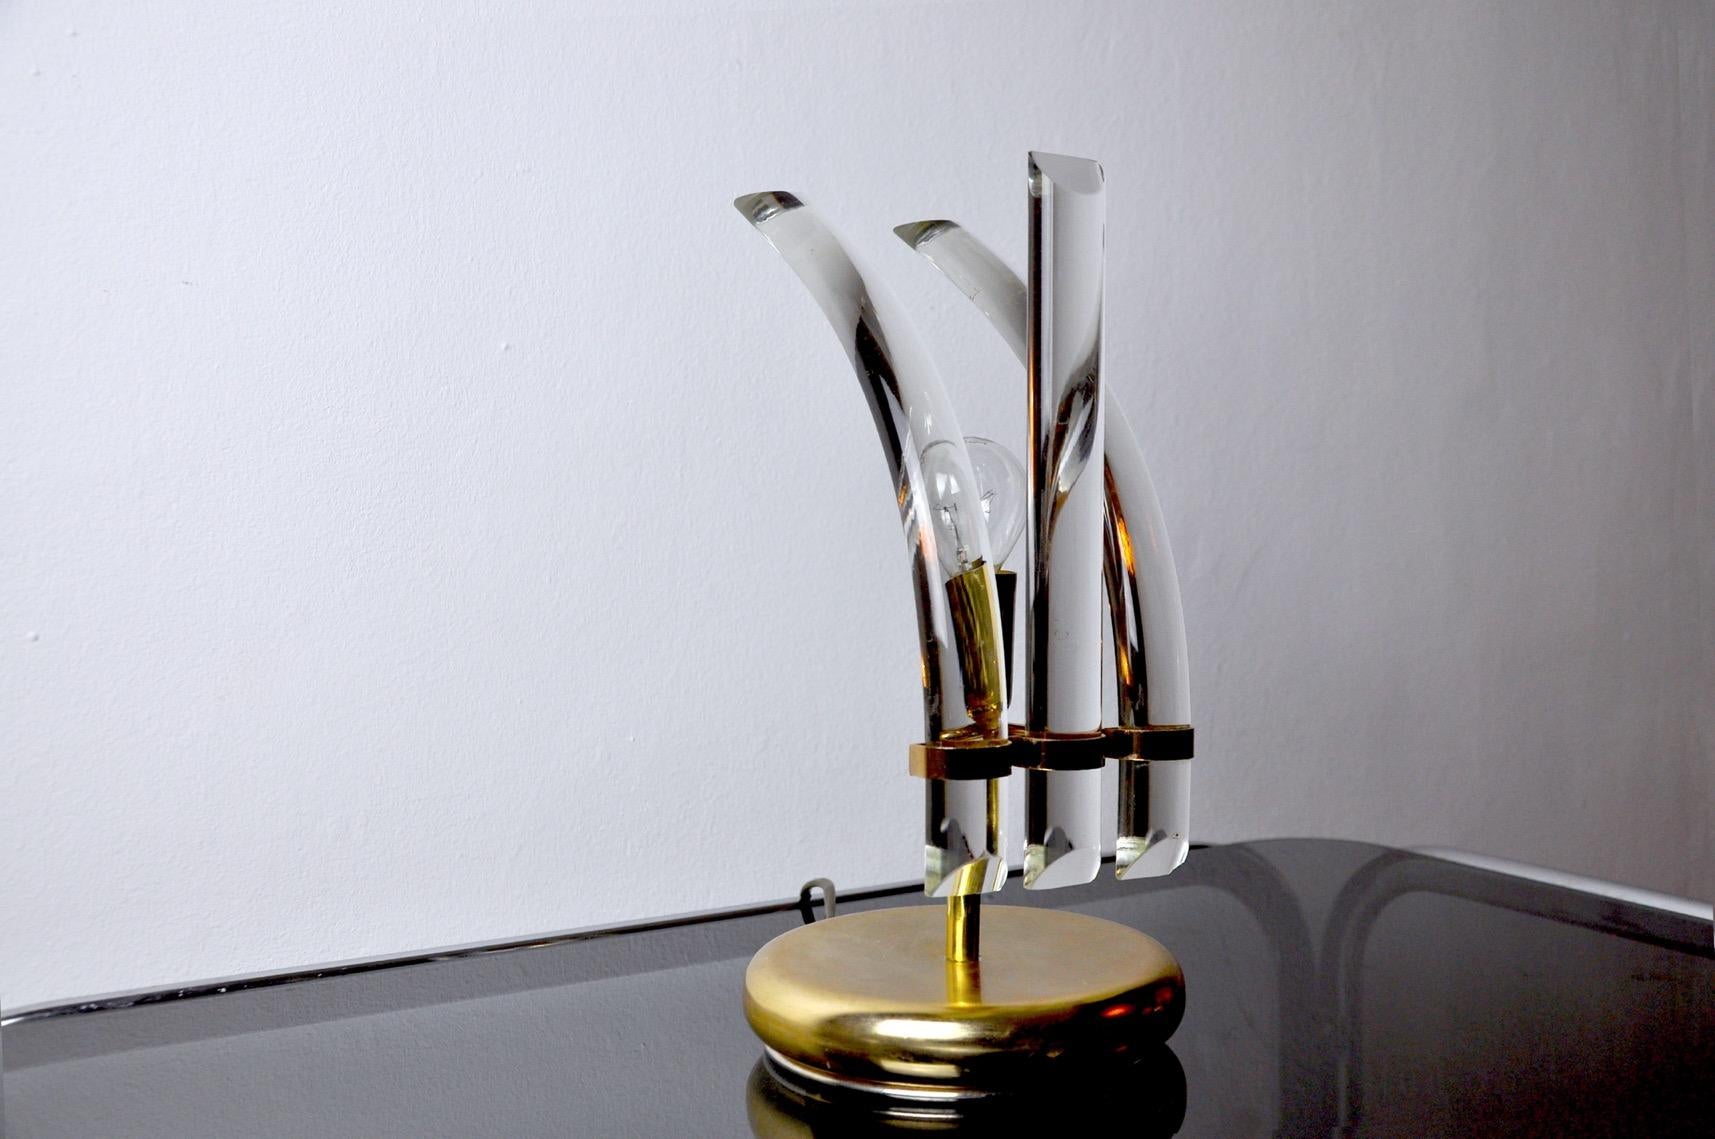 Très belle et rare lampe Venini datant des années 70, conçue et produite en Italie. Verre de Murano composé de cristaux courbes et droits. Objet au design unique qui illuminera merveilleusement votre intérieur. Contrôle de l'électricité, marque de